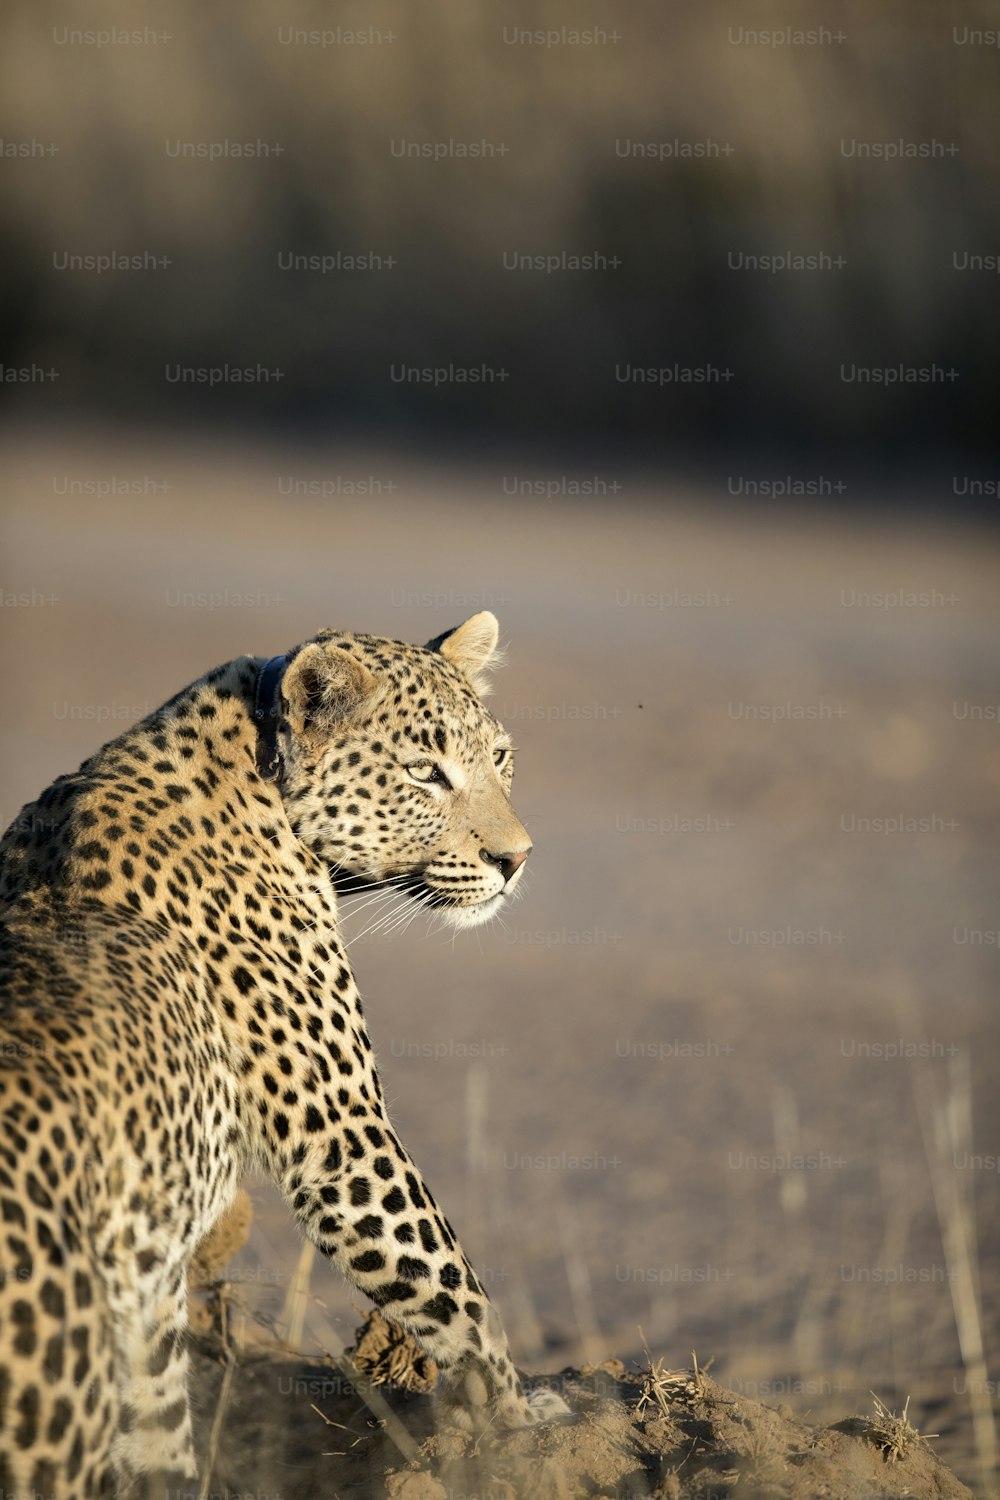 Leopardo descansando en el Parque Nacional de Etosha, Namibia.